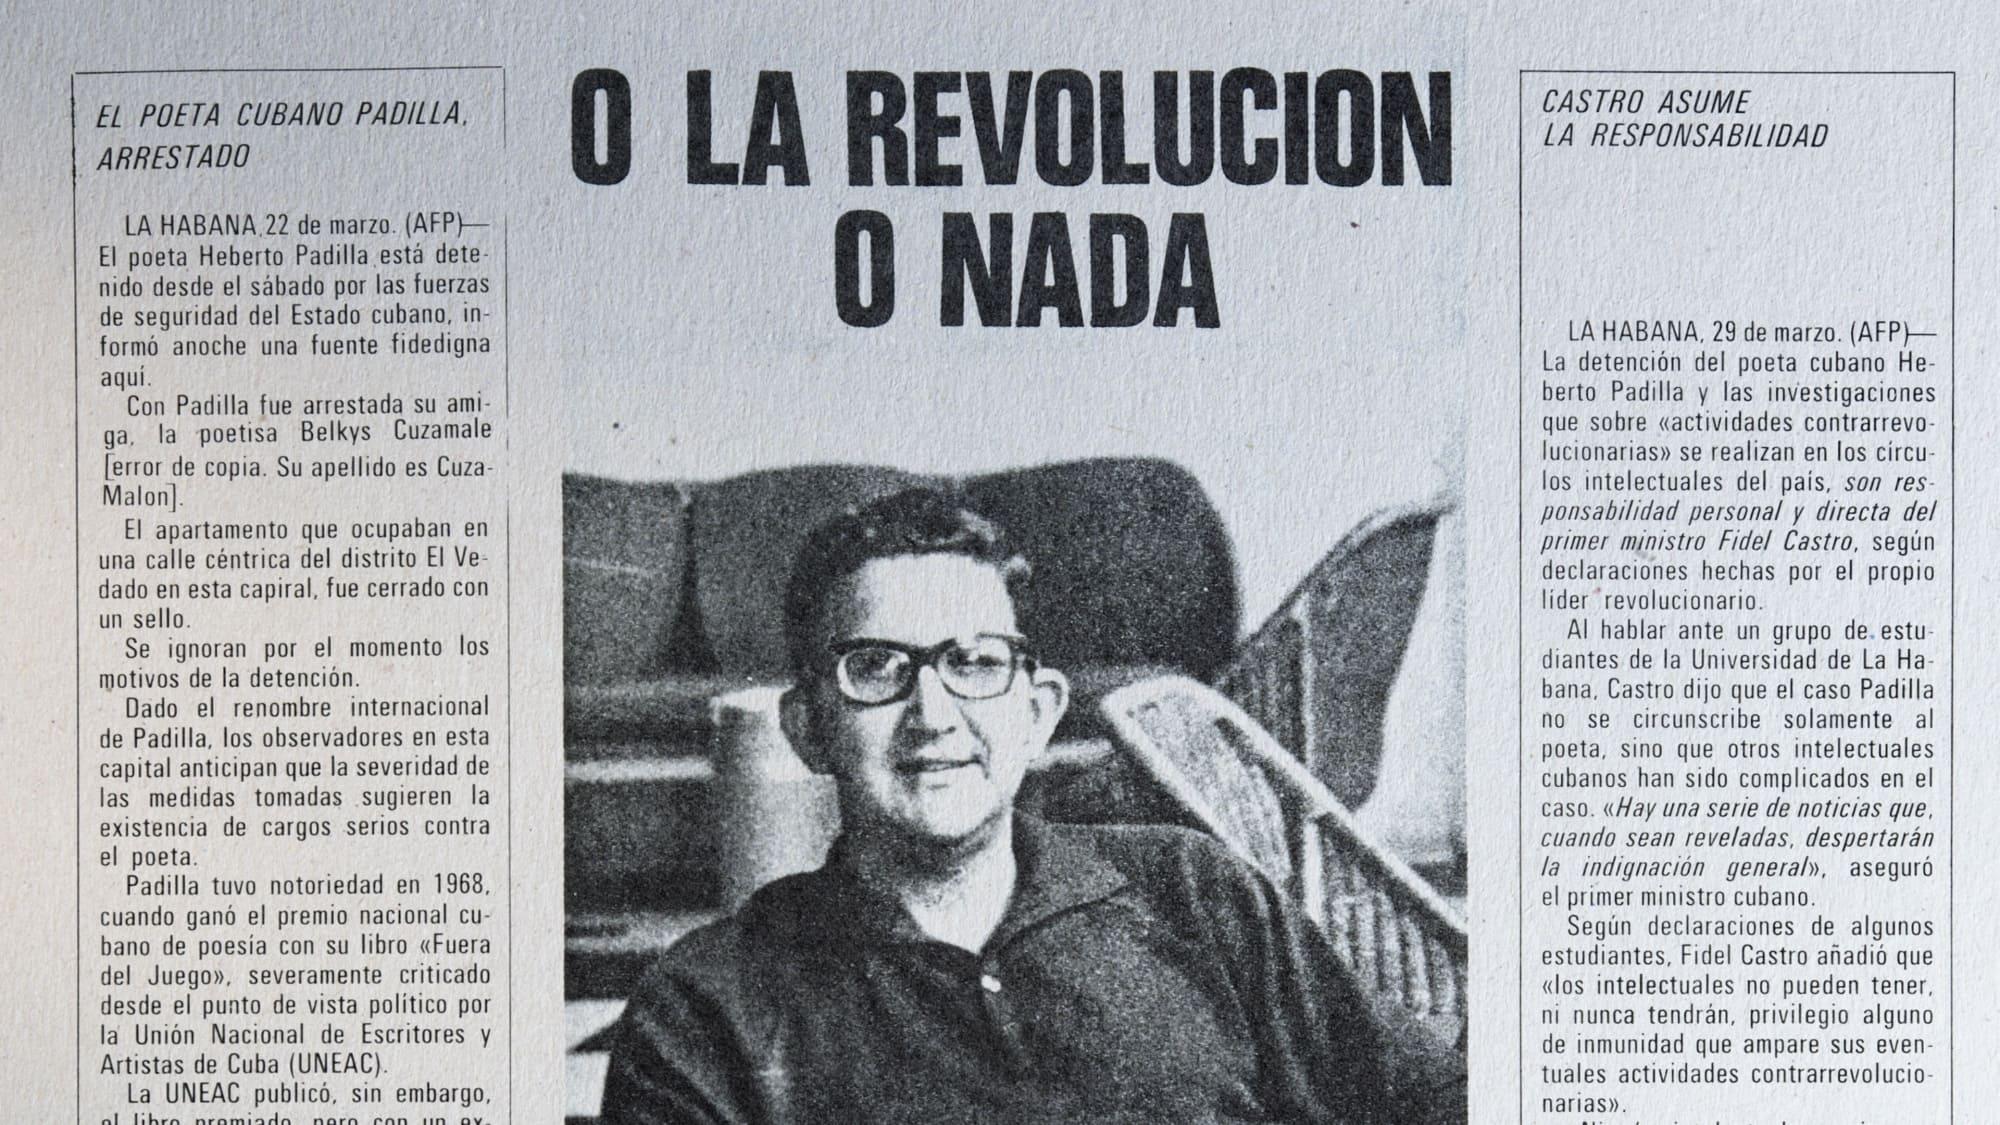 Julio Cortázar backdrop